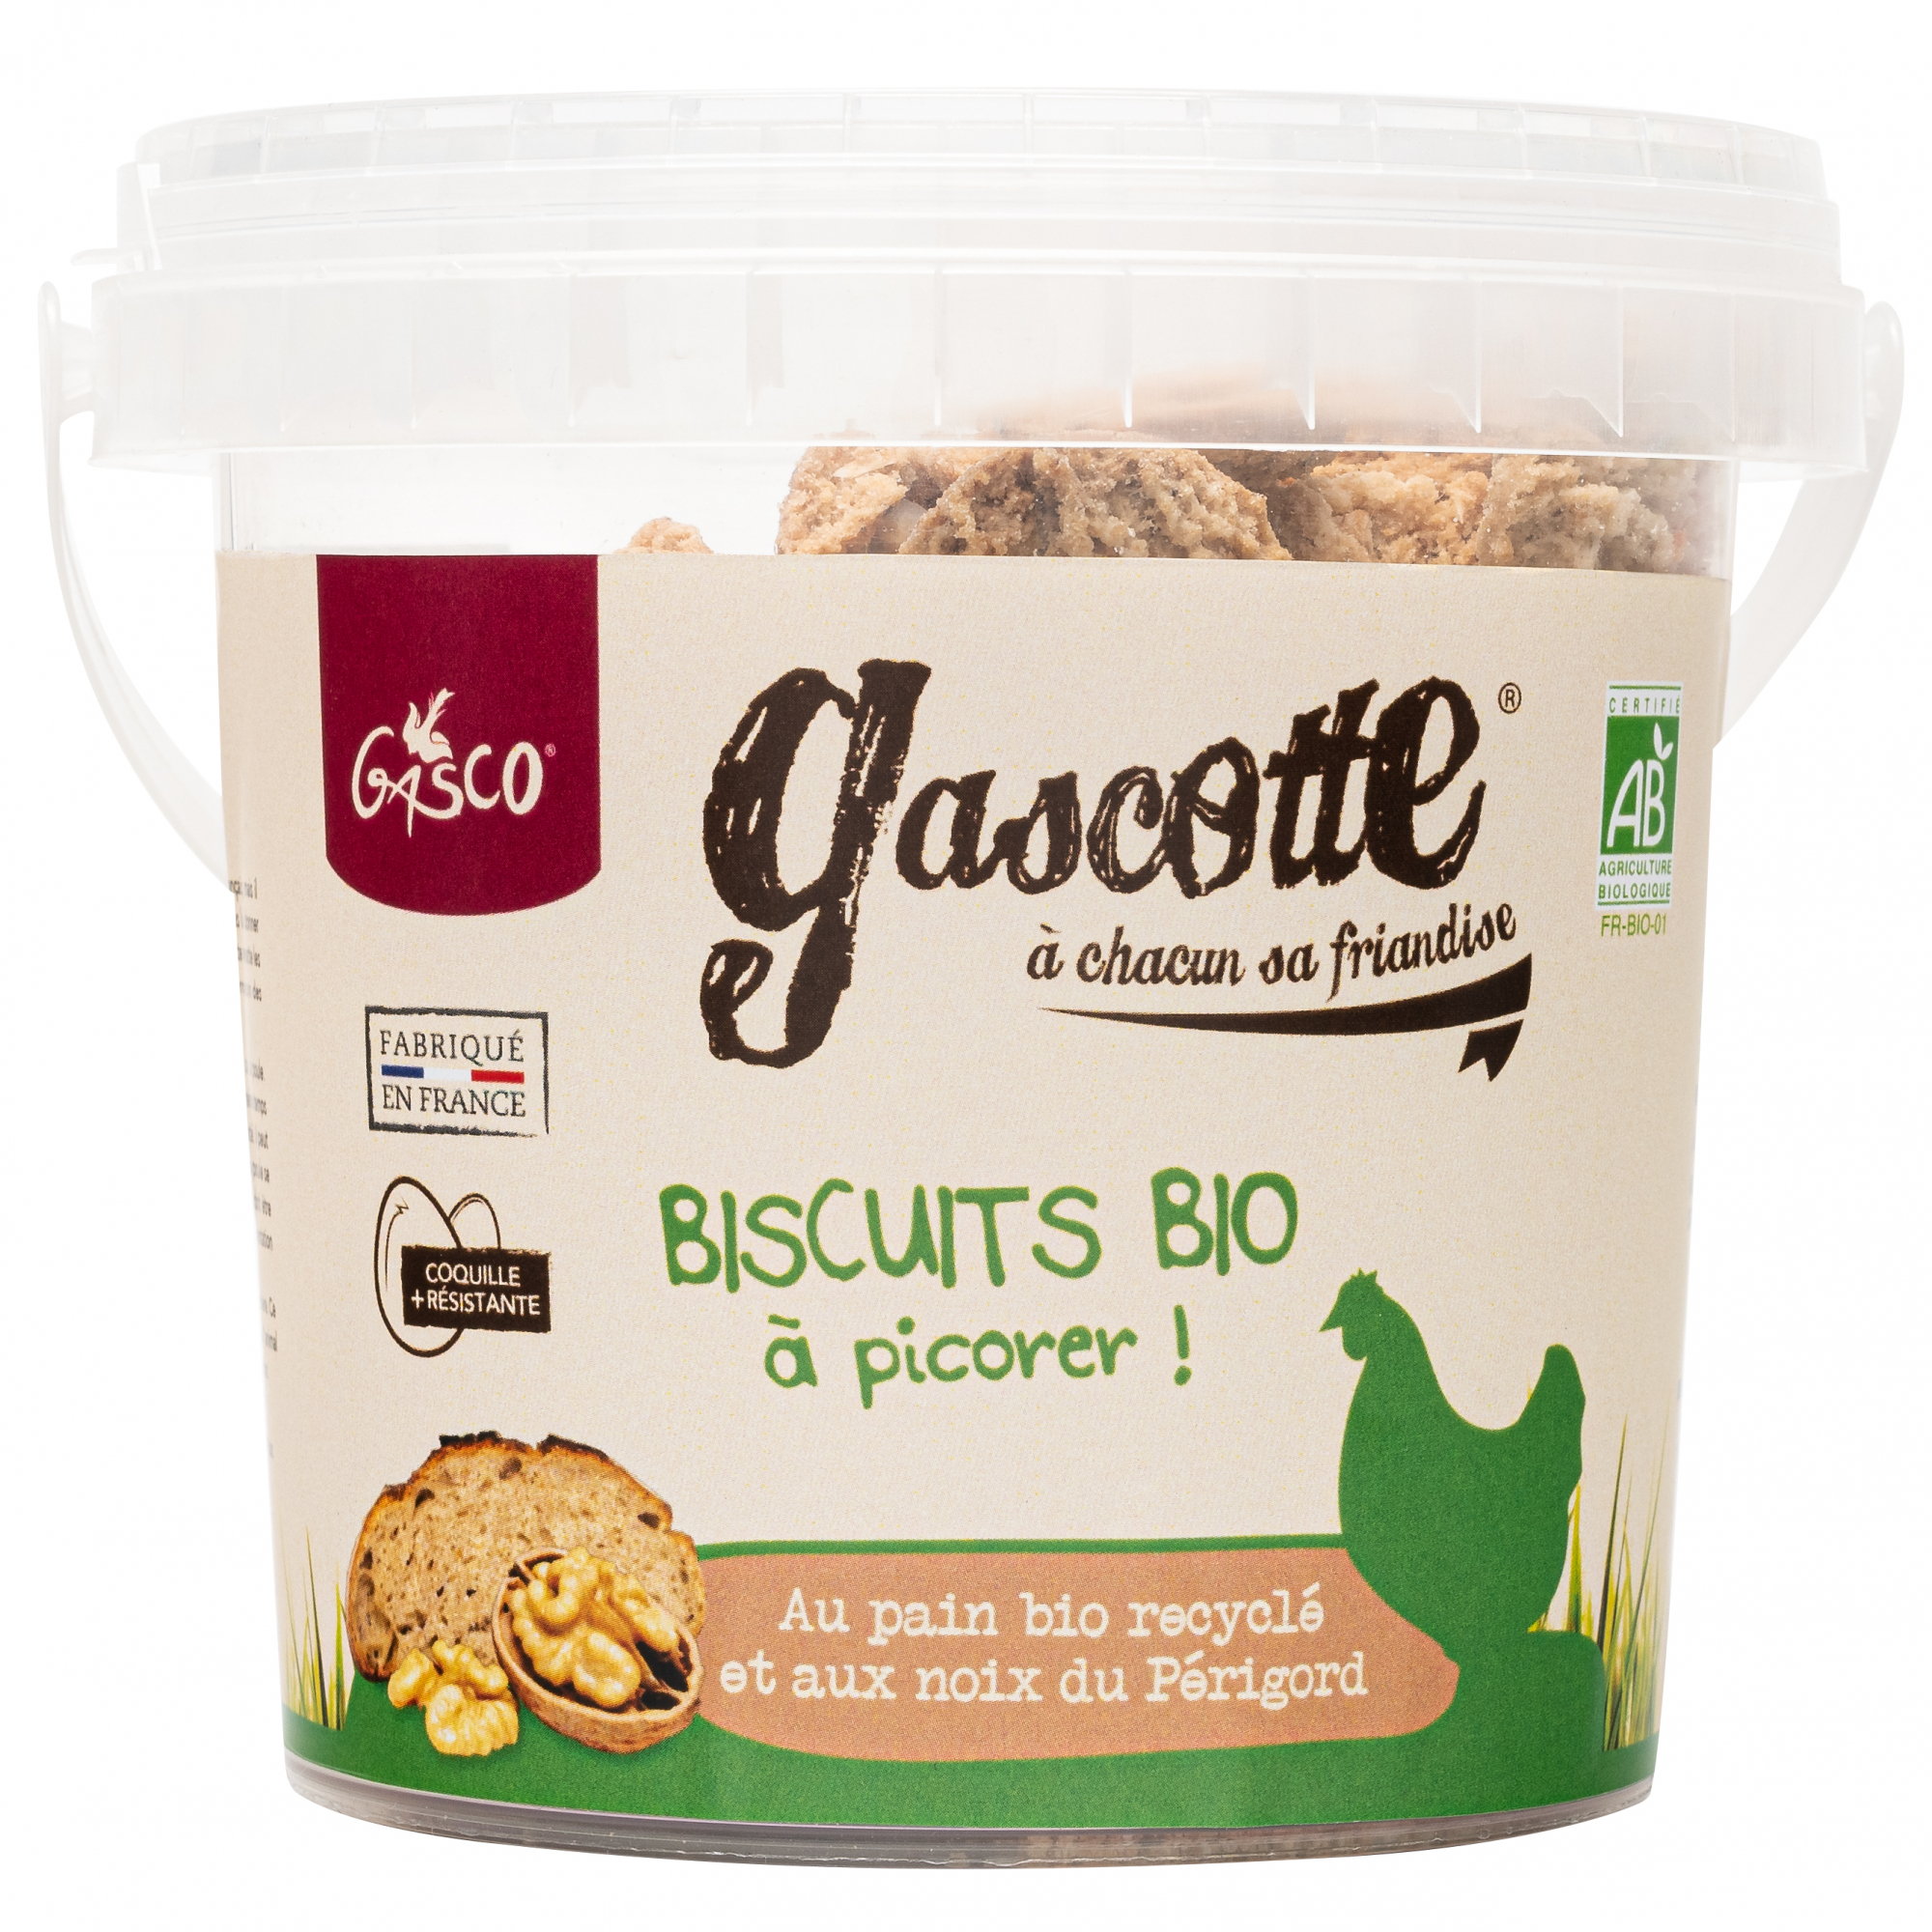 Biscuits au Pain recyclé 100% Bio